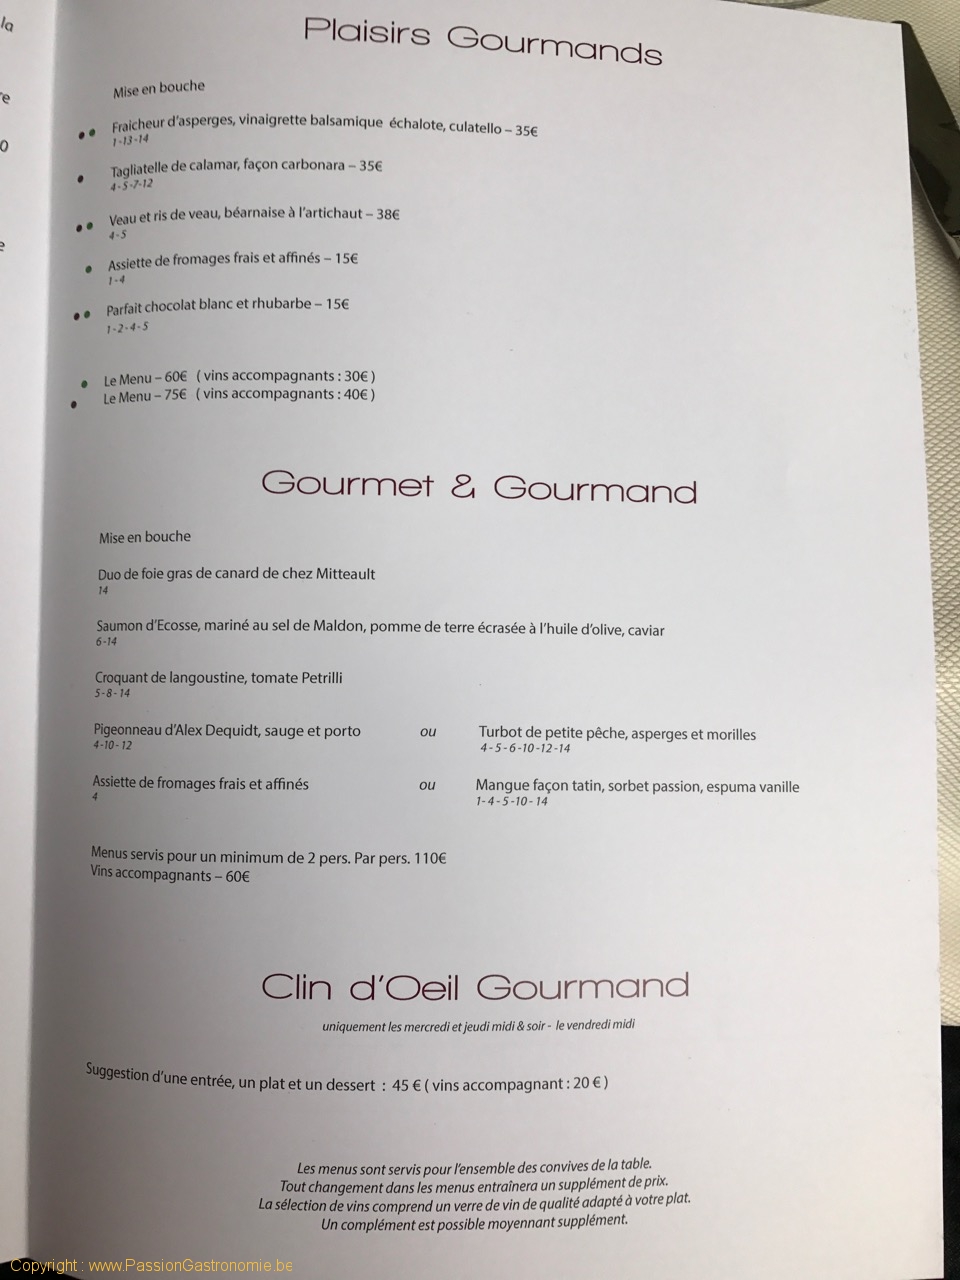 Restaurant Les Gourmands - Les menus